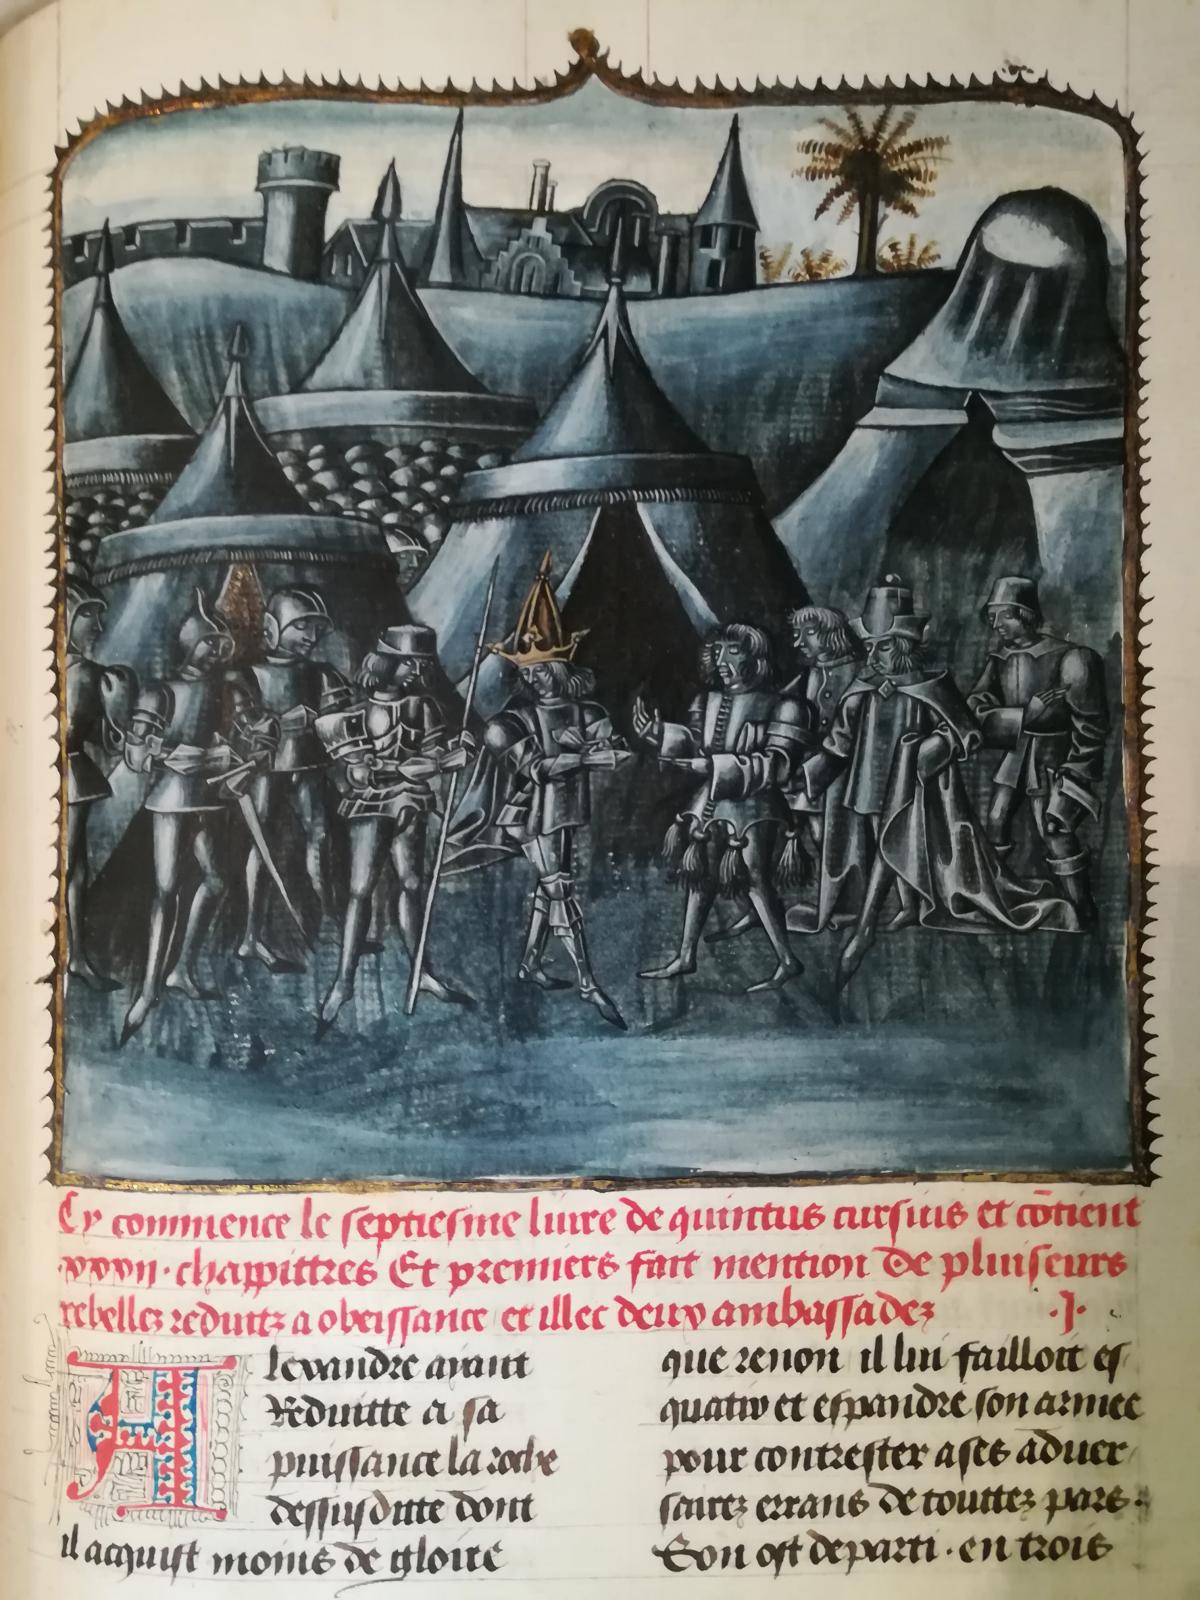 Quinte-Curce (Ier siècle), Faiz et conquestes d’Alexandre, traduction de Vasque de Lucène (vers 1435-1512), manuscrit enluminé sur papier et parchemin